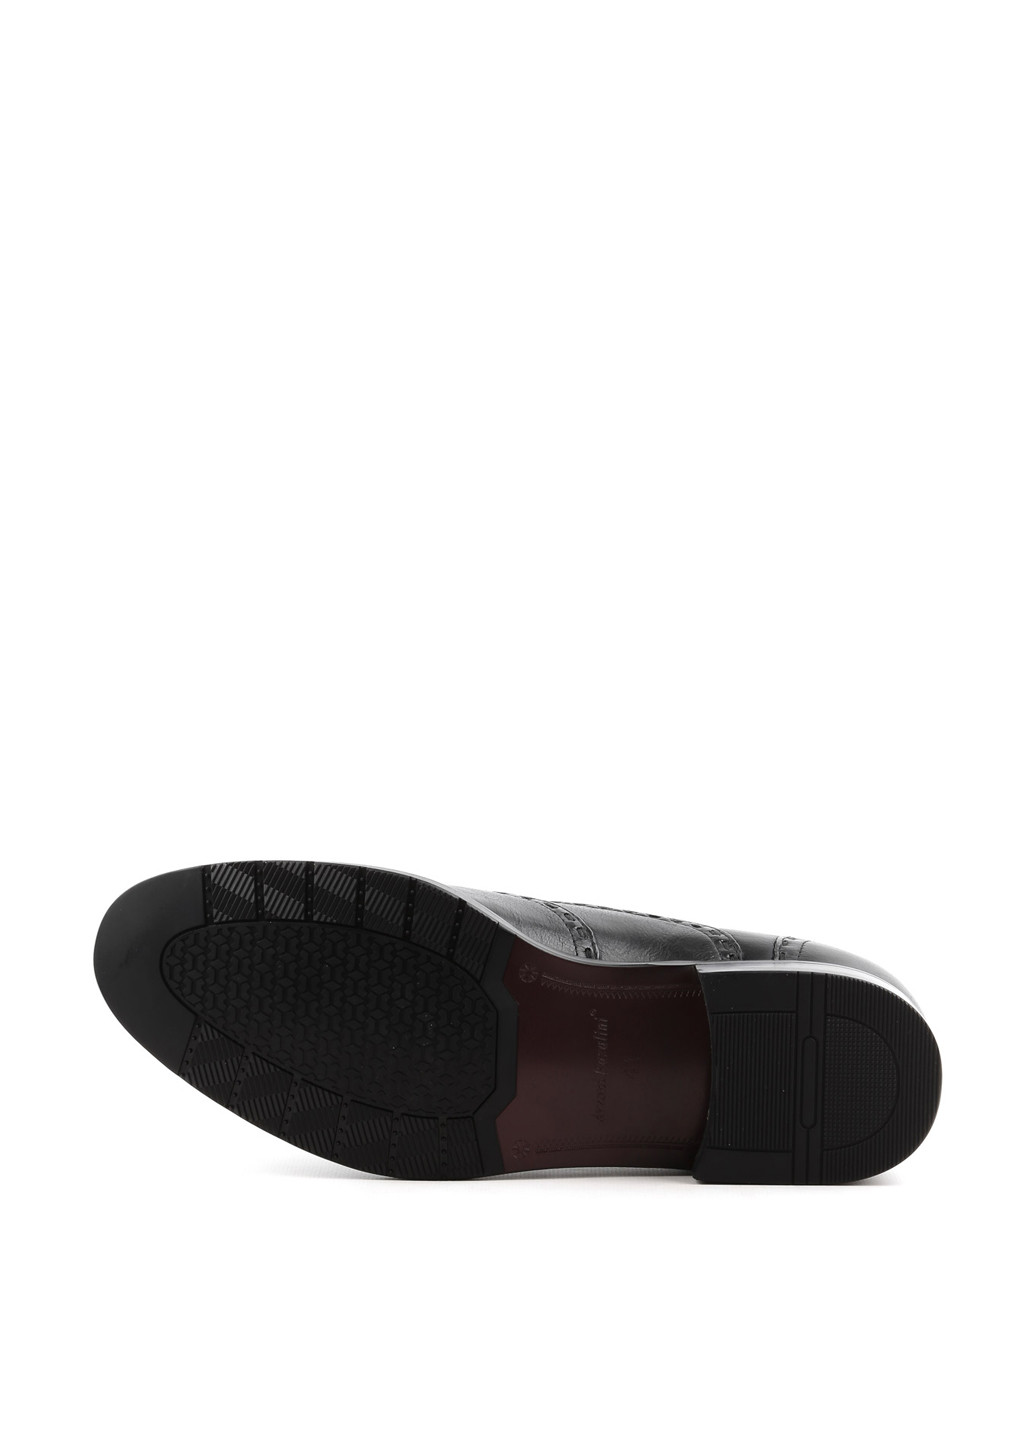 Черные классические туфли Arzoni Bazalini на шнурках